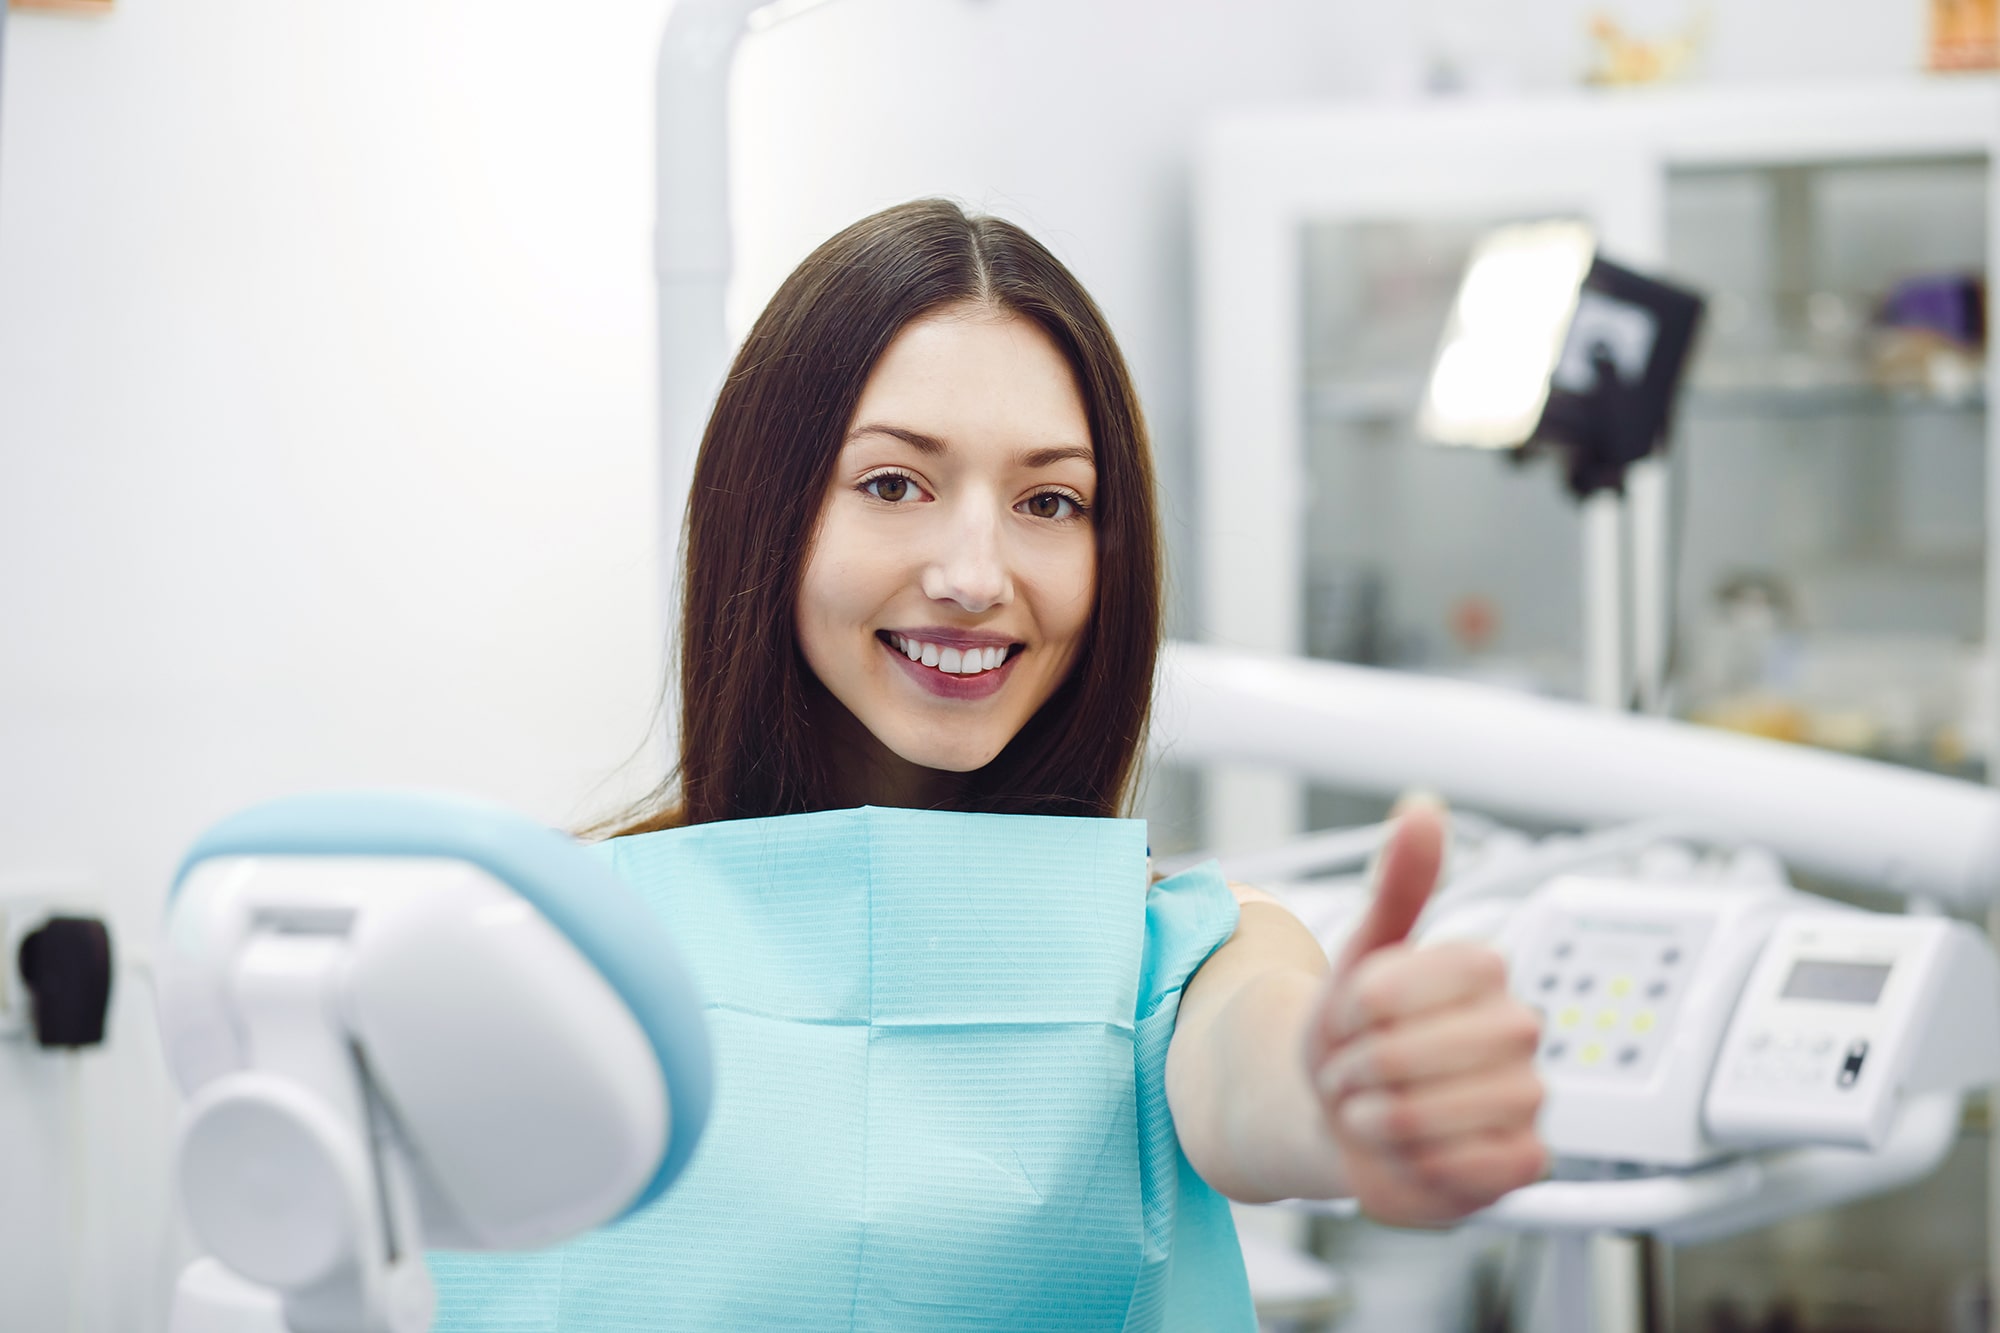 Mujer joven sonriendo positiva en dentista